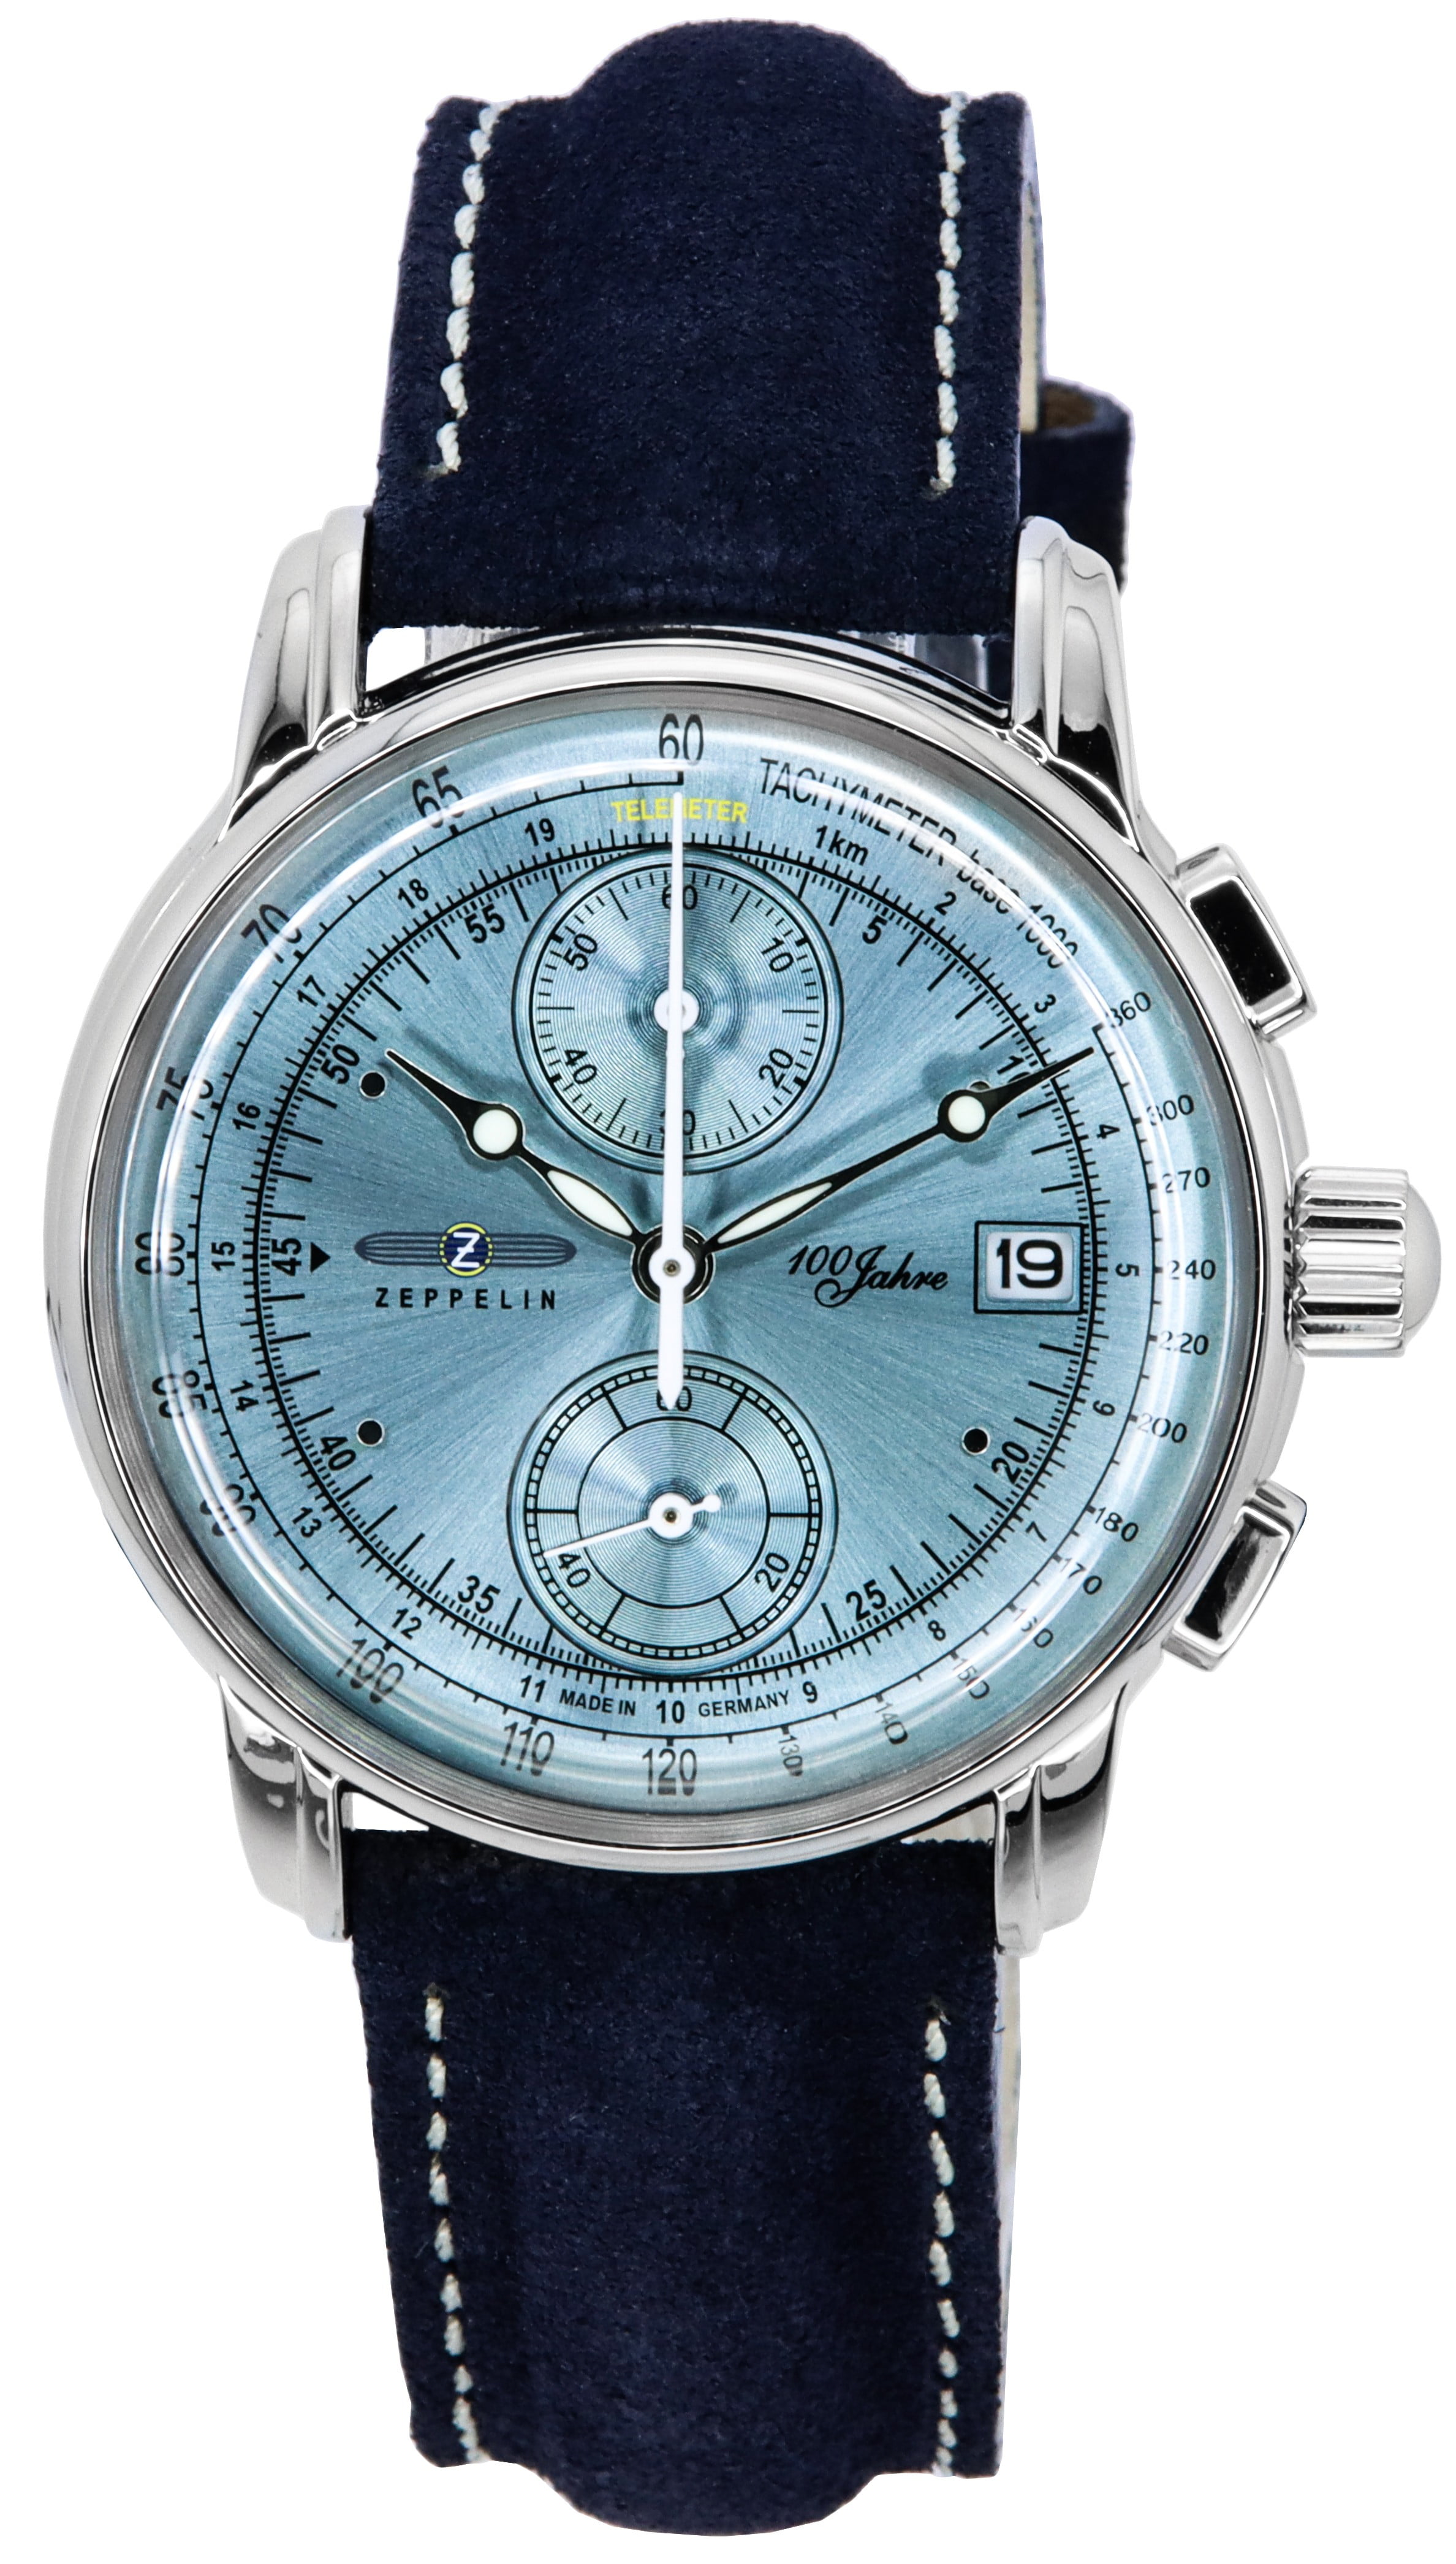 Zeppelin 100 Jahre Chronograph Leather Strap Ice Blue Dial Quartz 86704  Men's Watch